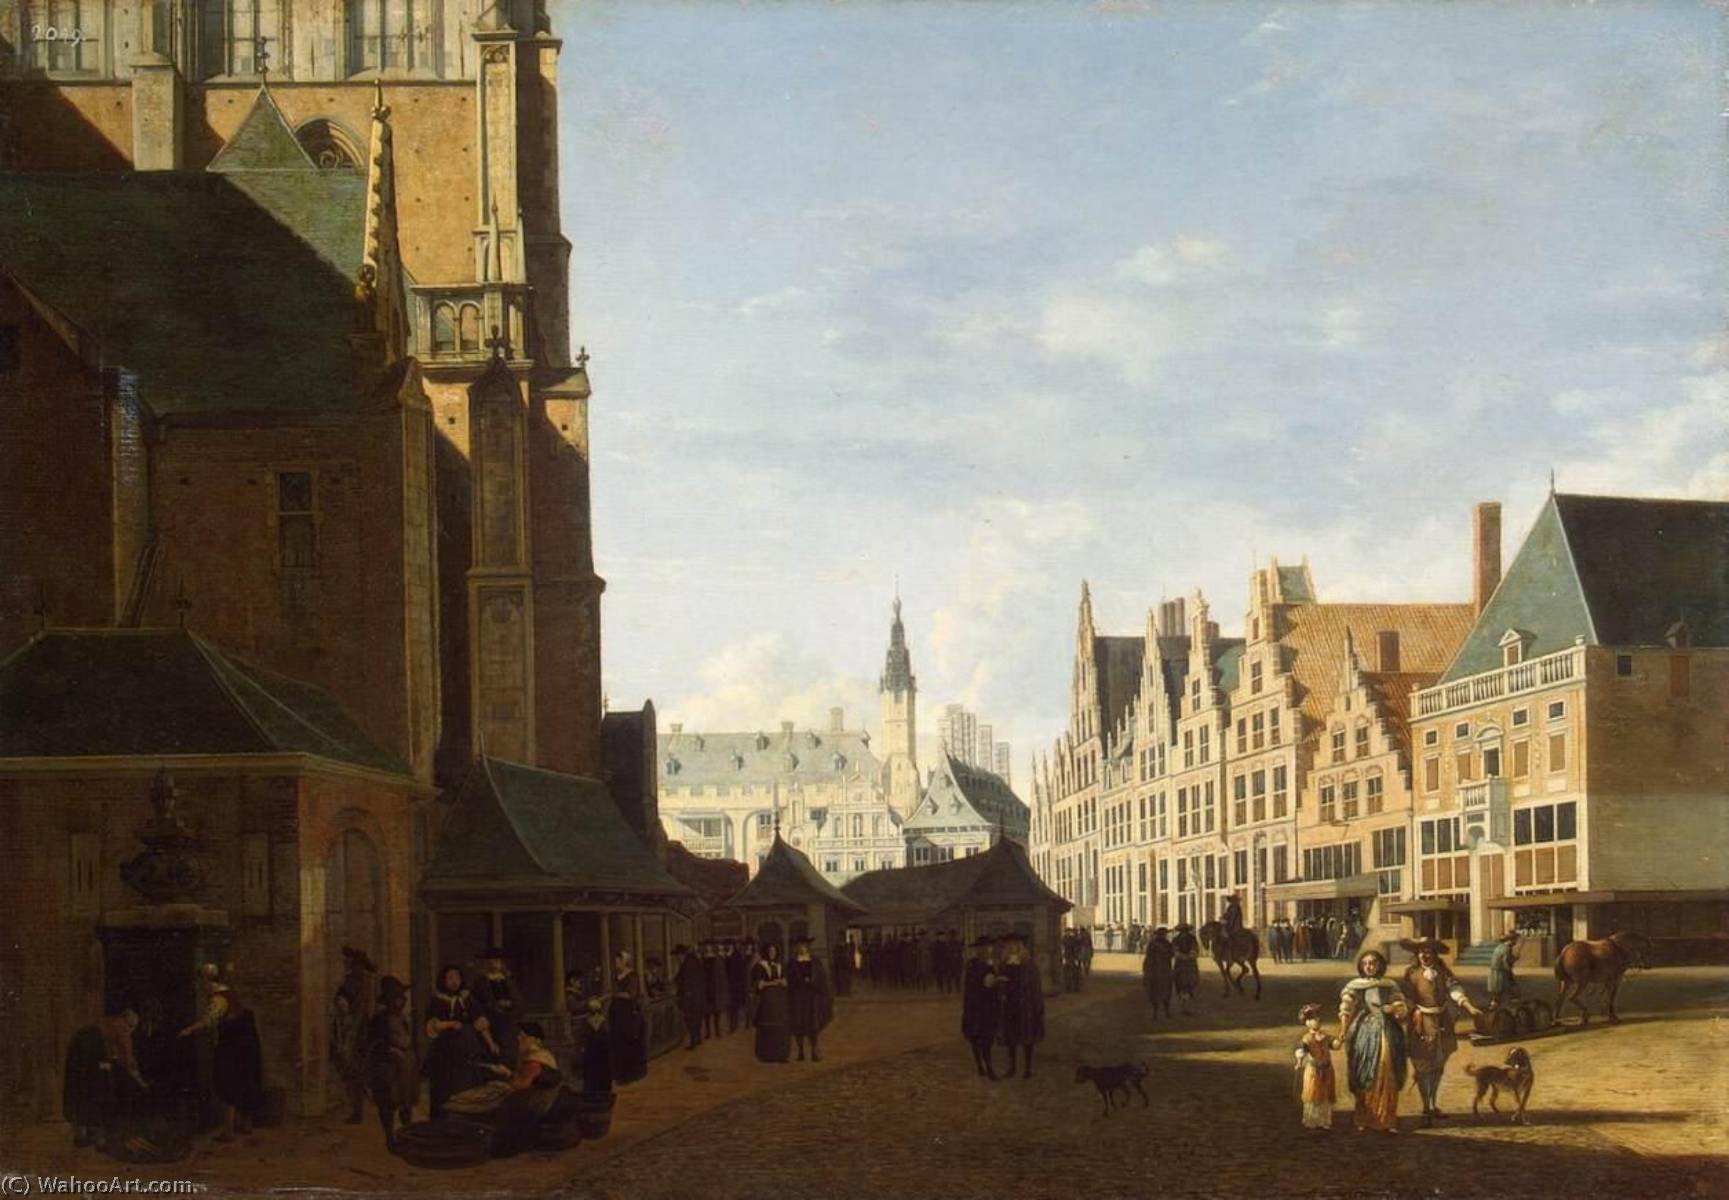 WikiOO.org - Encyclopedia of Fine Arts - Lukisan, Artwork Gerrit Adriaenszoon Berckheyde - The Groote Market in Haarlem